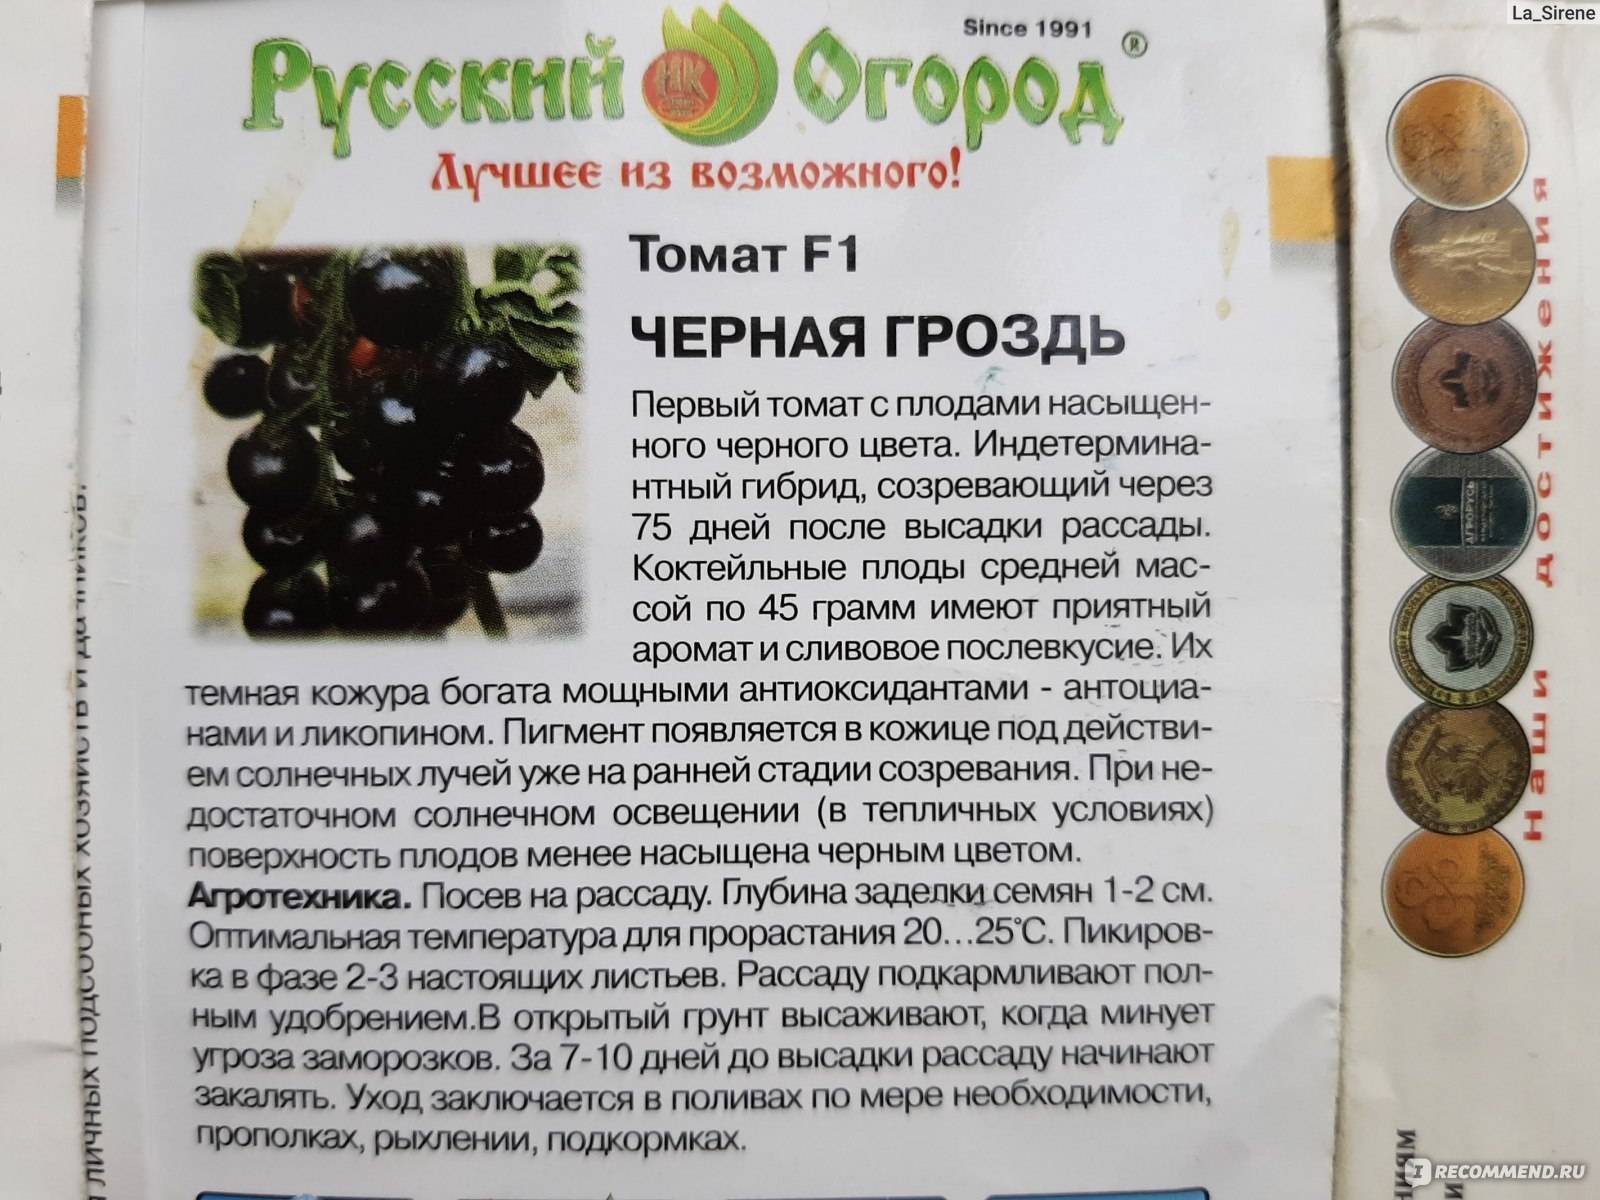 Описание гибридного томата Черная гроздь и рекомендации по выращиванию в открытом грунте